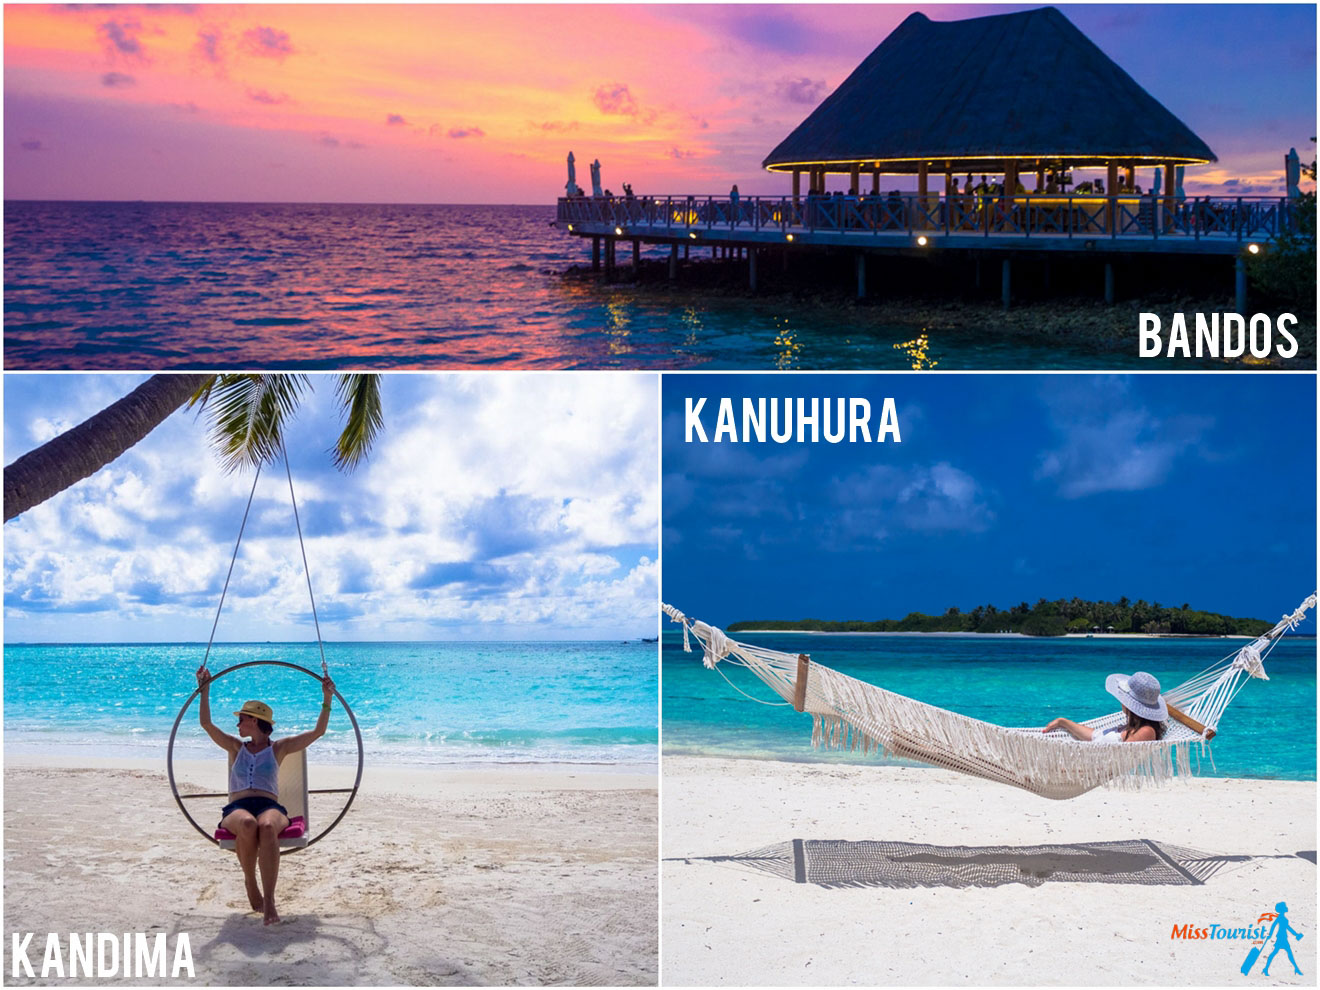 3 Amazing Resorts in The Maldives Bandos Kanuhura Kandima